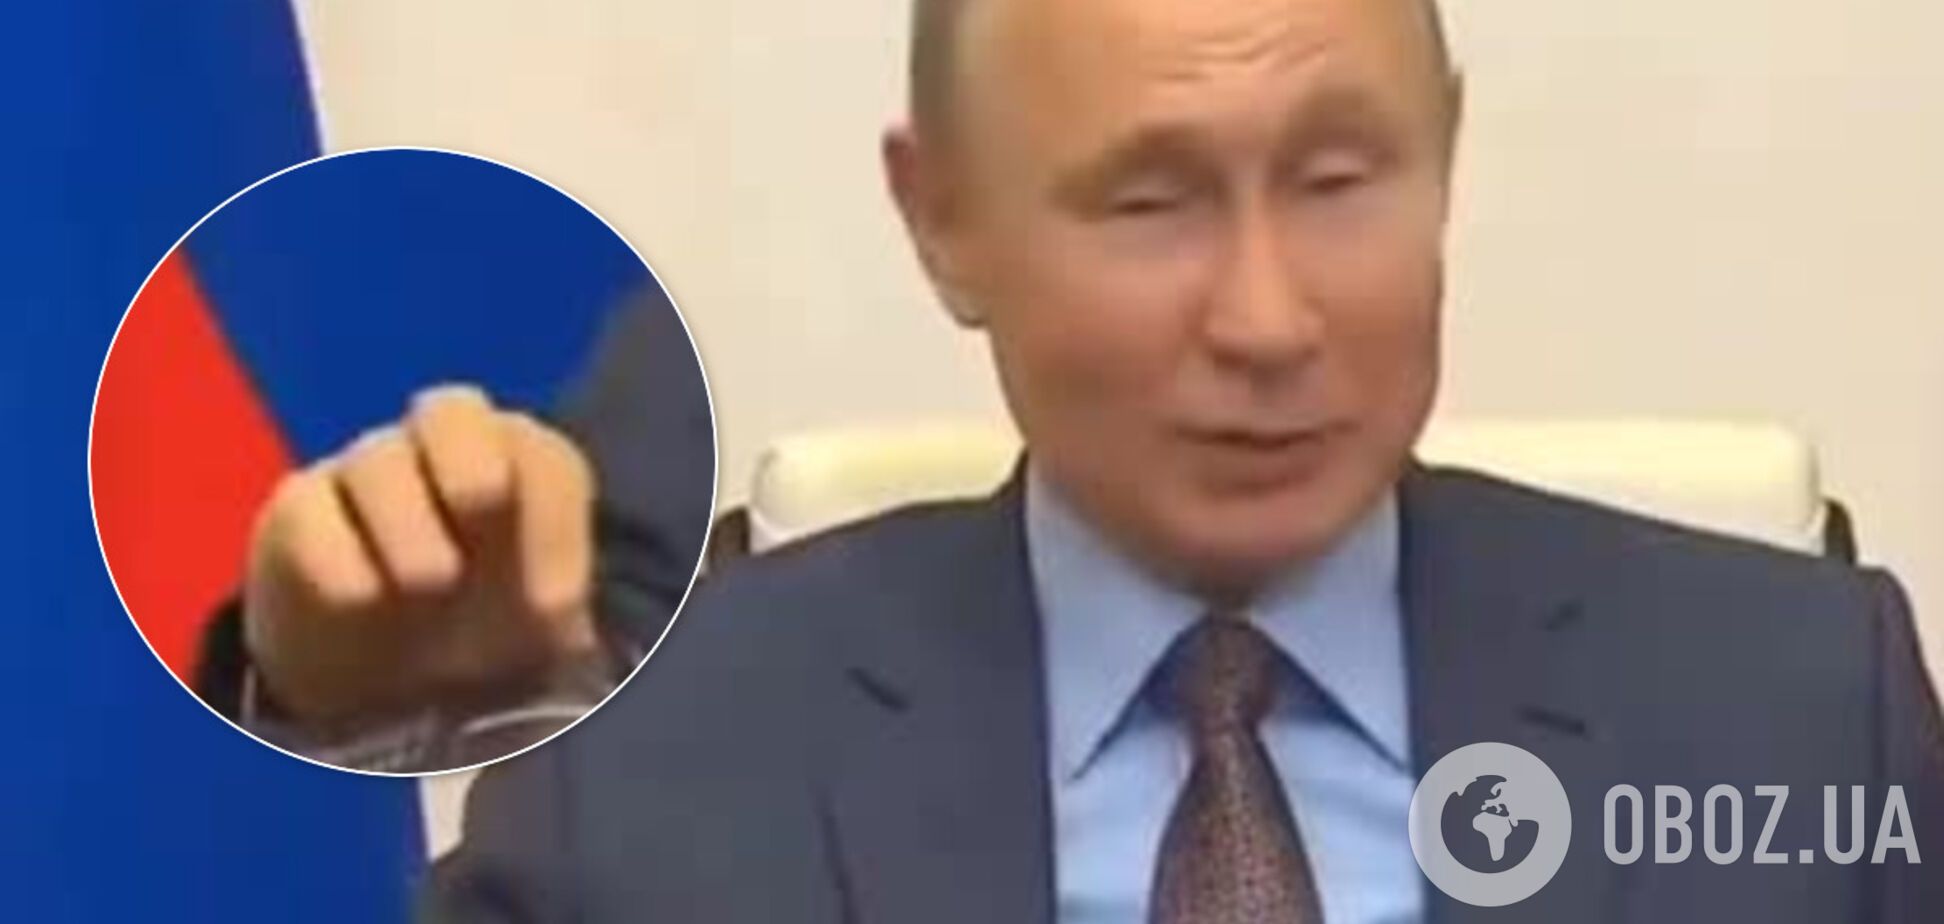 Сеть озадачил неожиданный жест Путина на совещании: видео